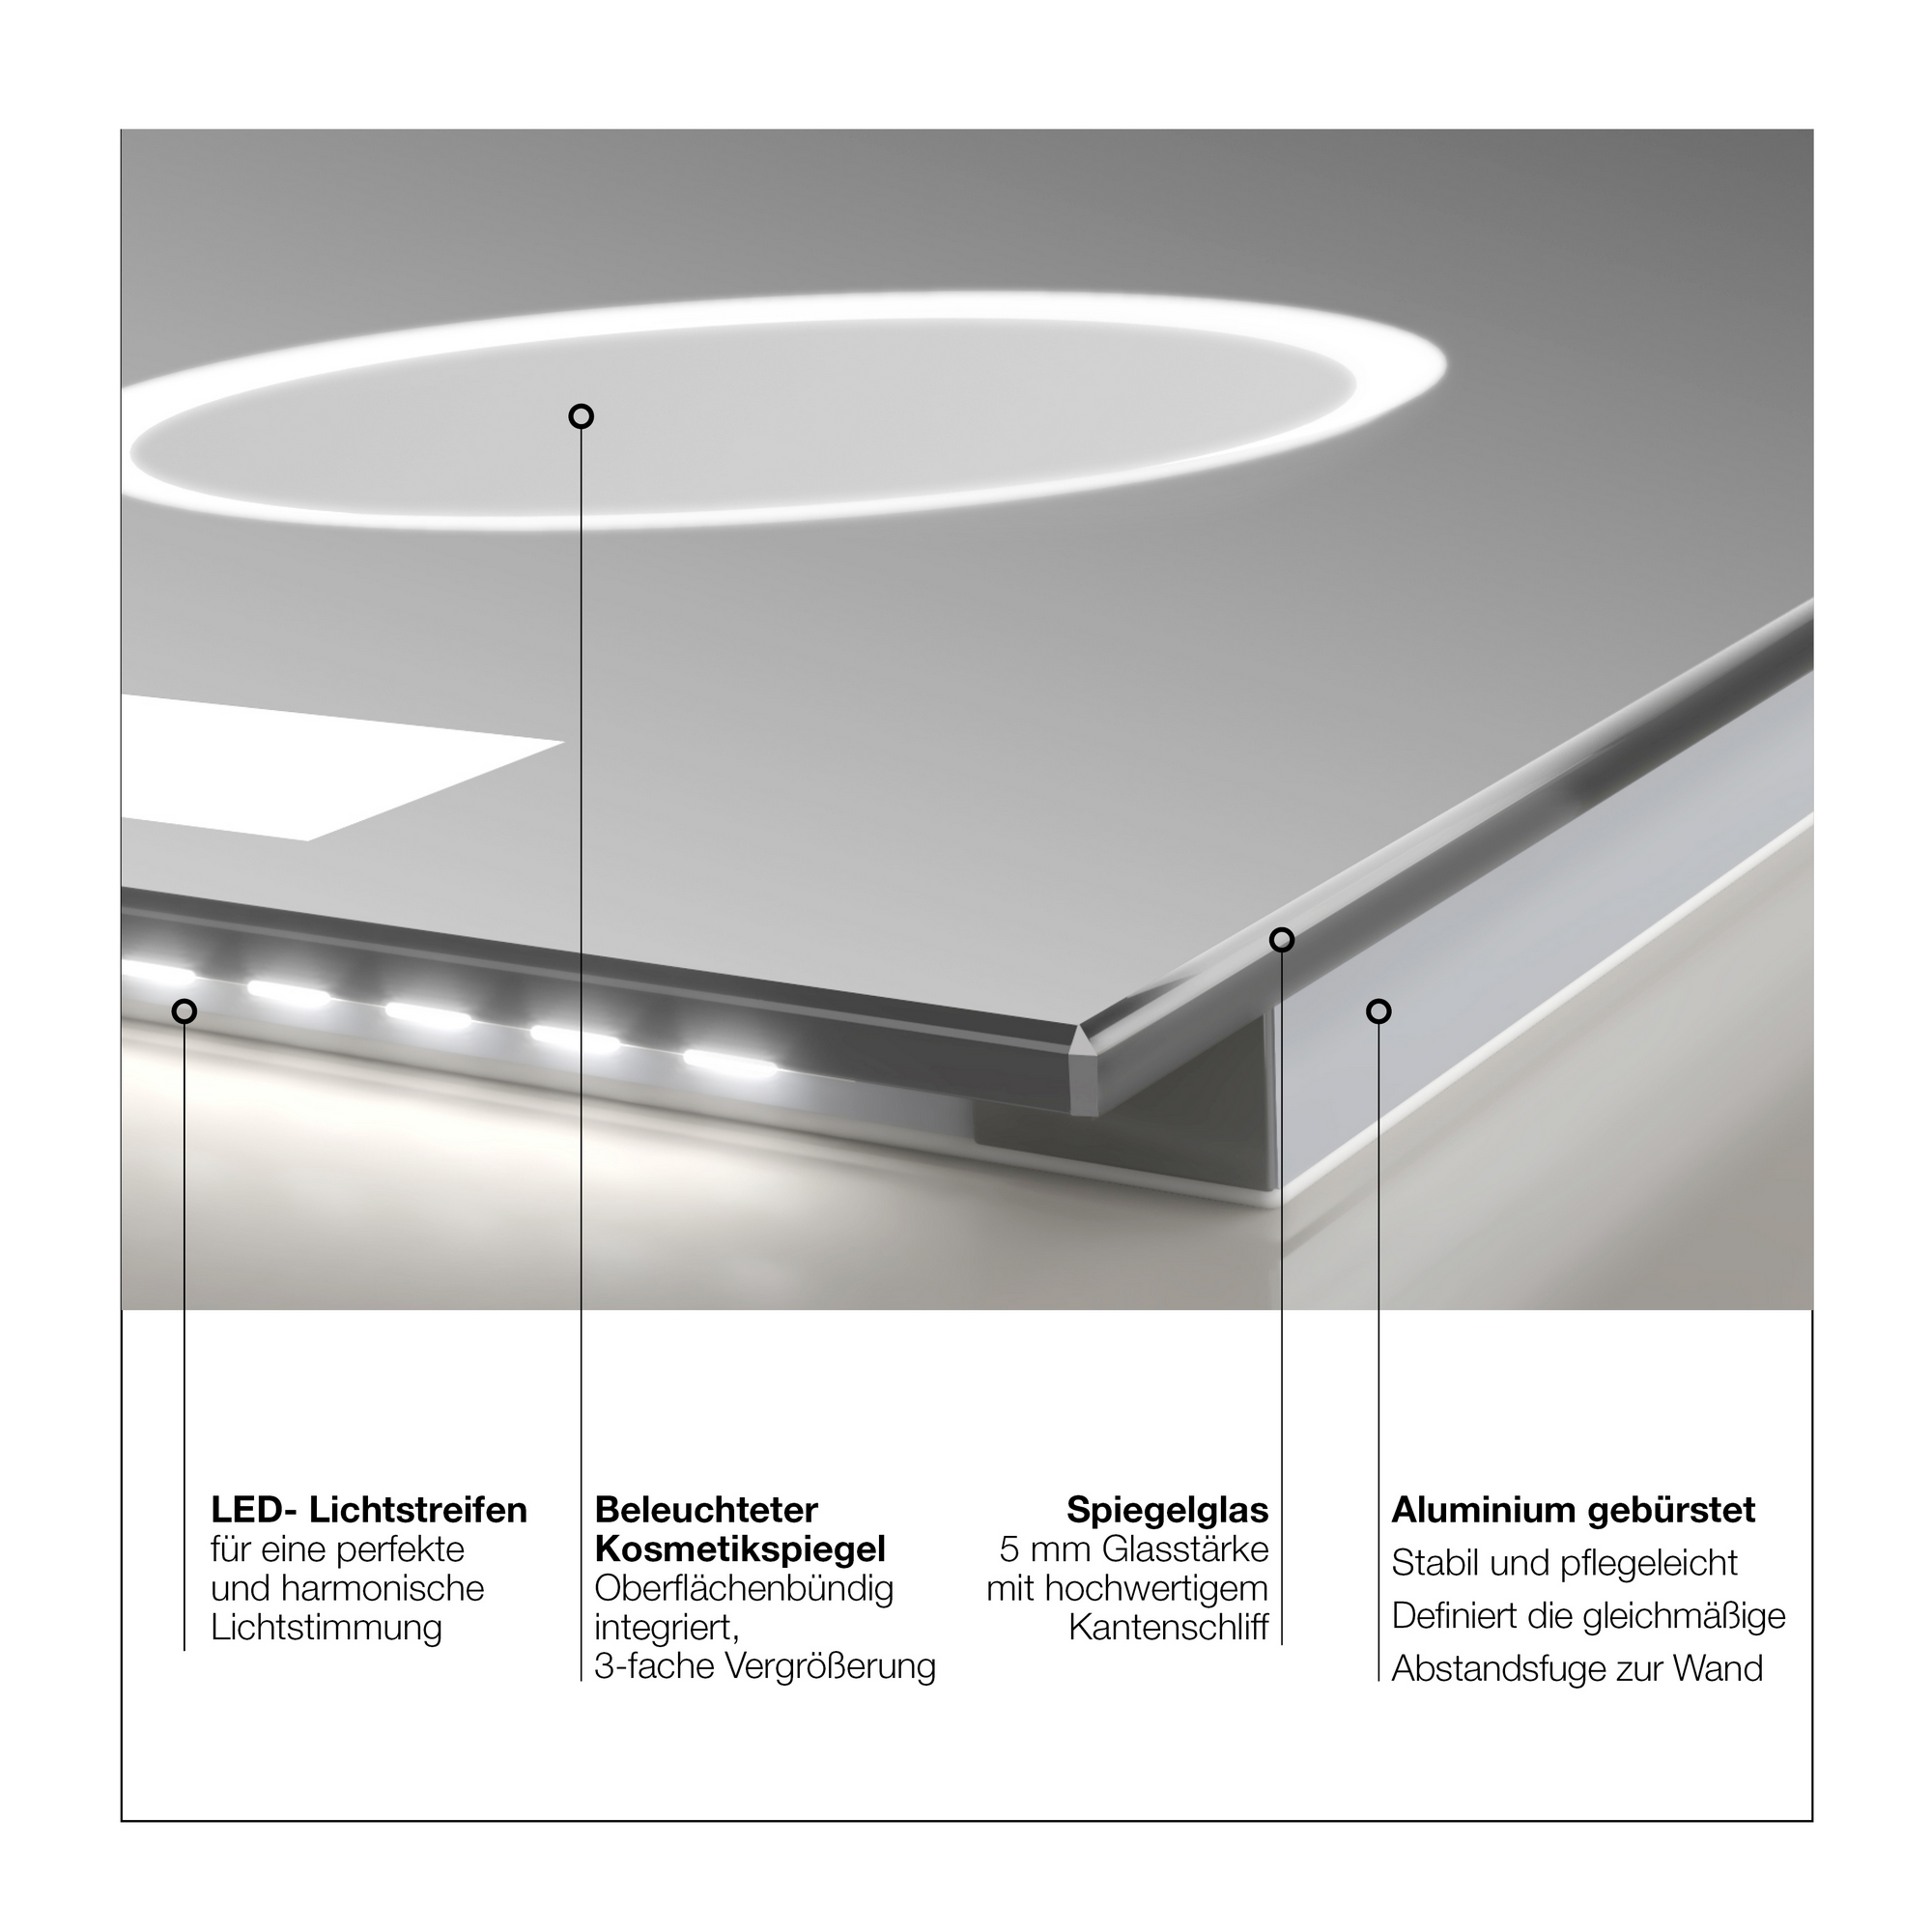 LED-Spiegel 'Silver Style' mit Uhr und Kosmetikspiegel 120 x 60 cm + product picture